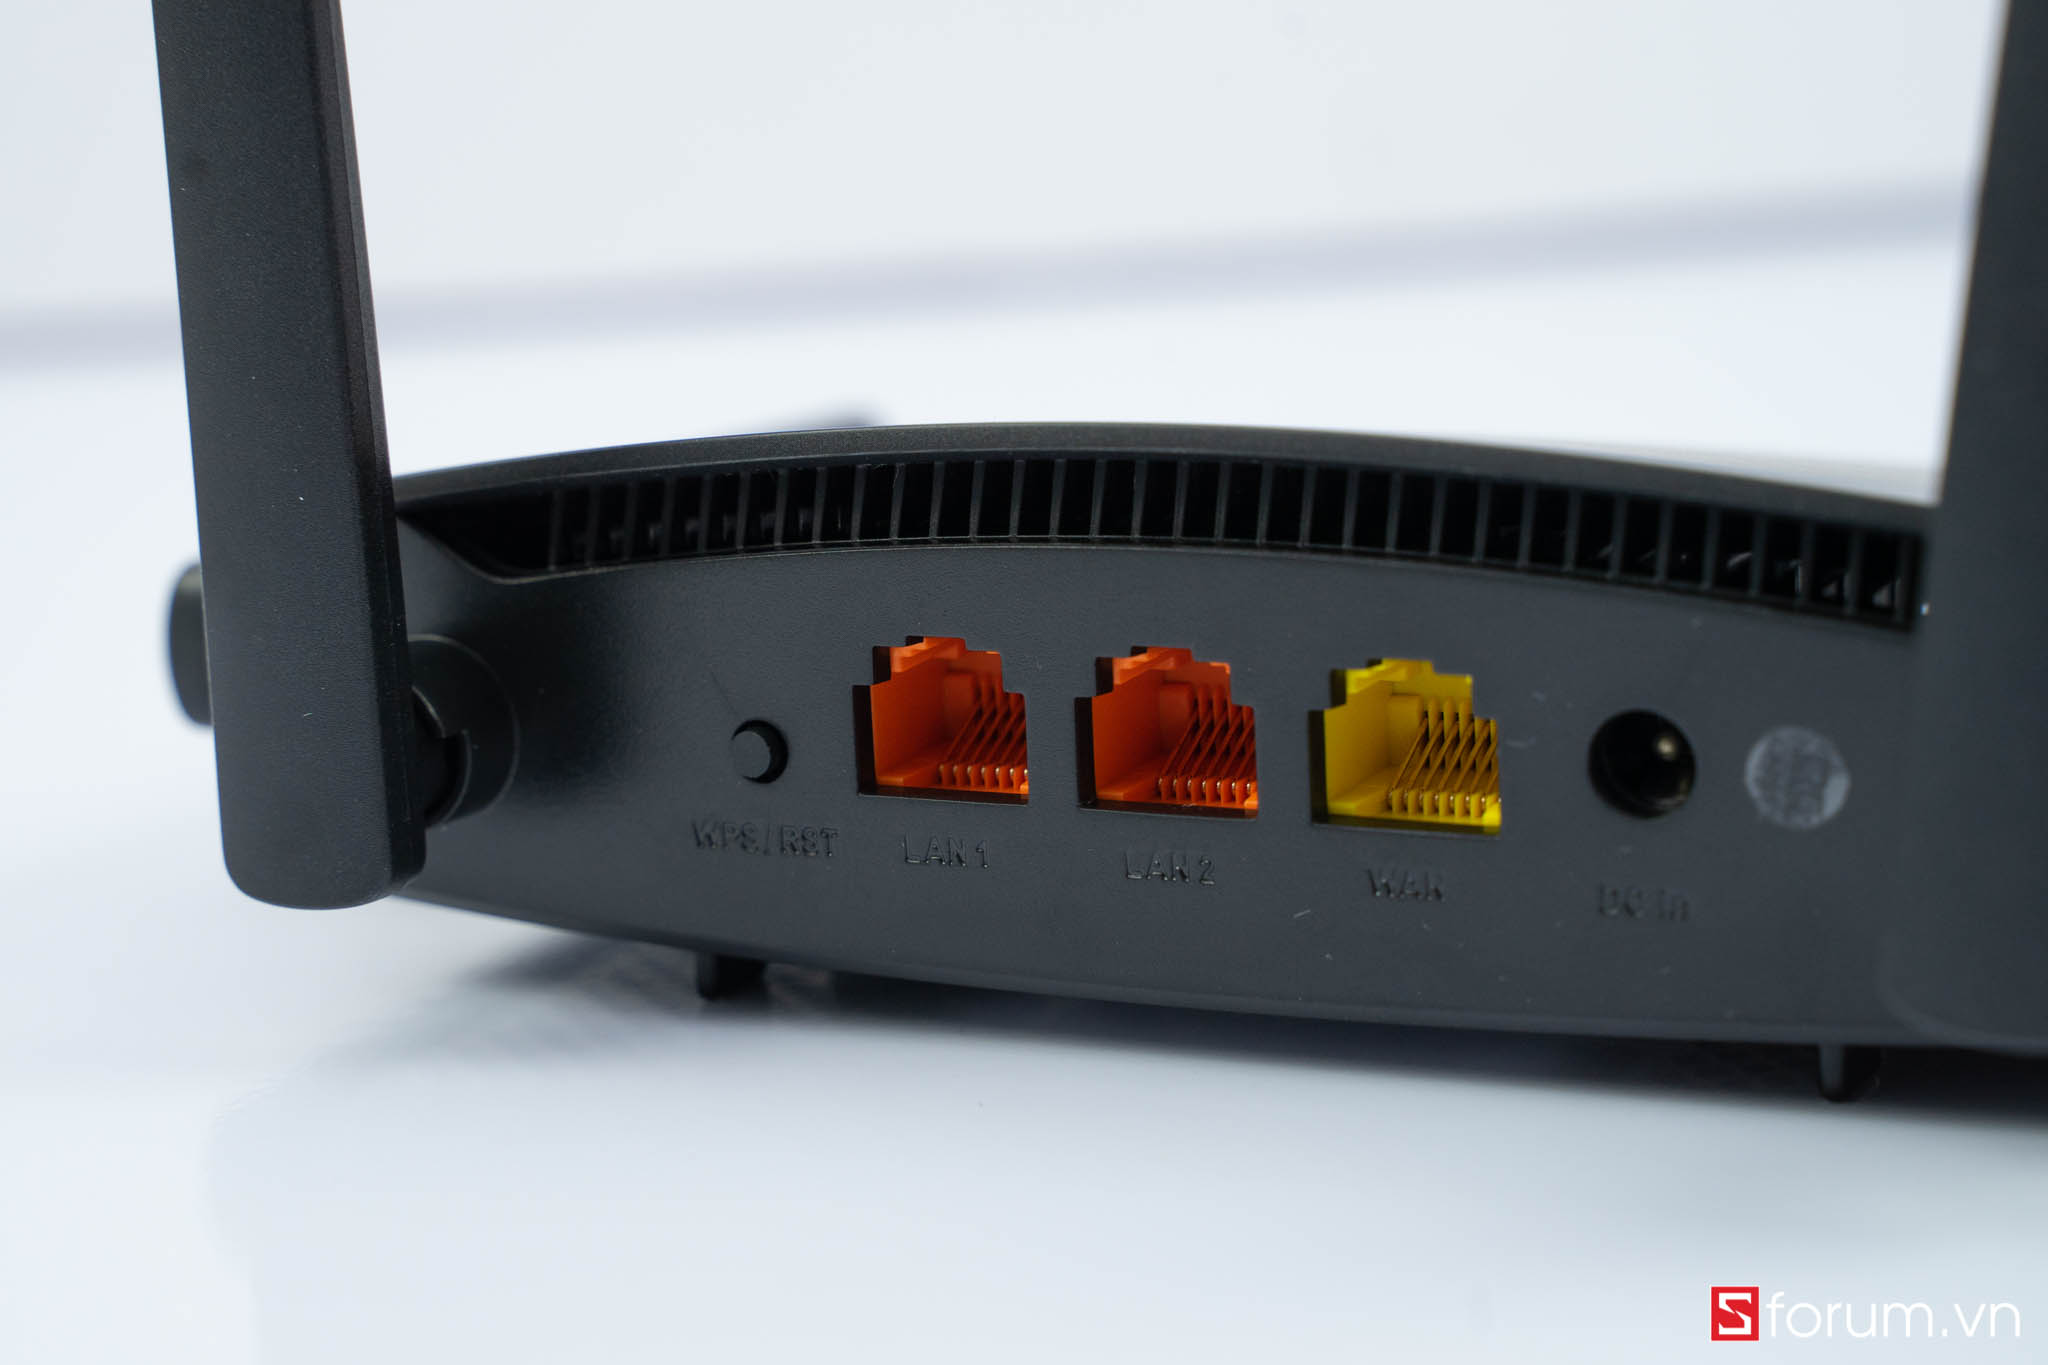 Sforum - Trang thông tin công nghệ mới nhất Totolink-AC1200-11 Mở hộp và trên tay nhanh router totolink A720R: Băng tần kép, thiết kế gọn nhẹ, giá cực hấp dẫn 